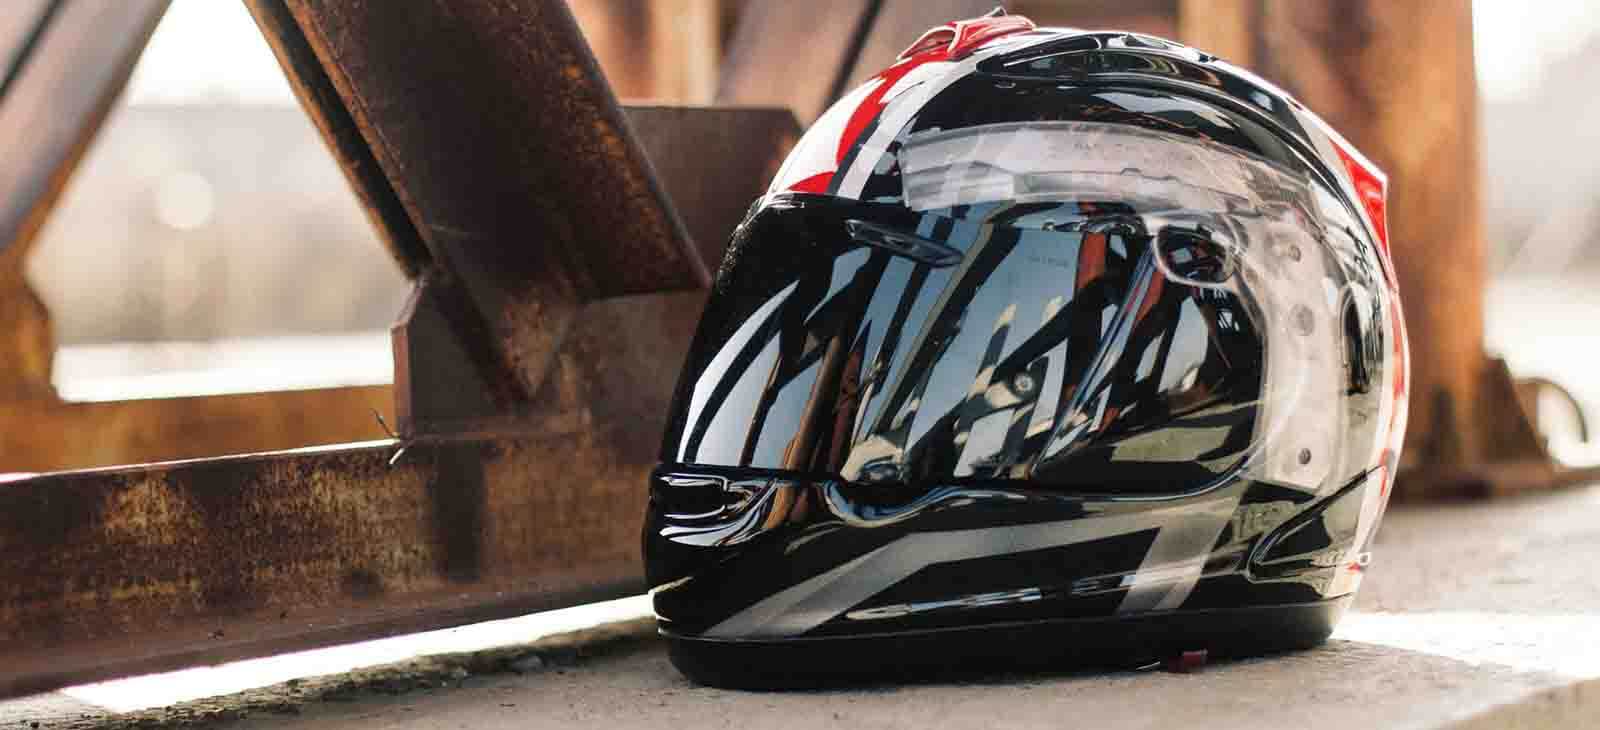  Autodomy Antivol Casque Moto - Cadenas Casque Moto - Mousqueton  avec Code de Sécurité + Câble Acier Souple + Adaptateur T - Accessoire  Sécurité Attache Casque Moto